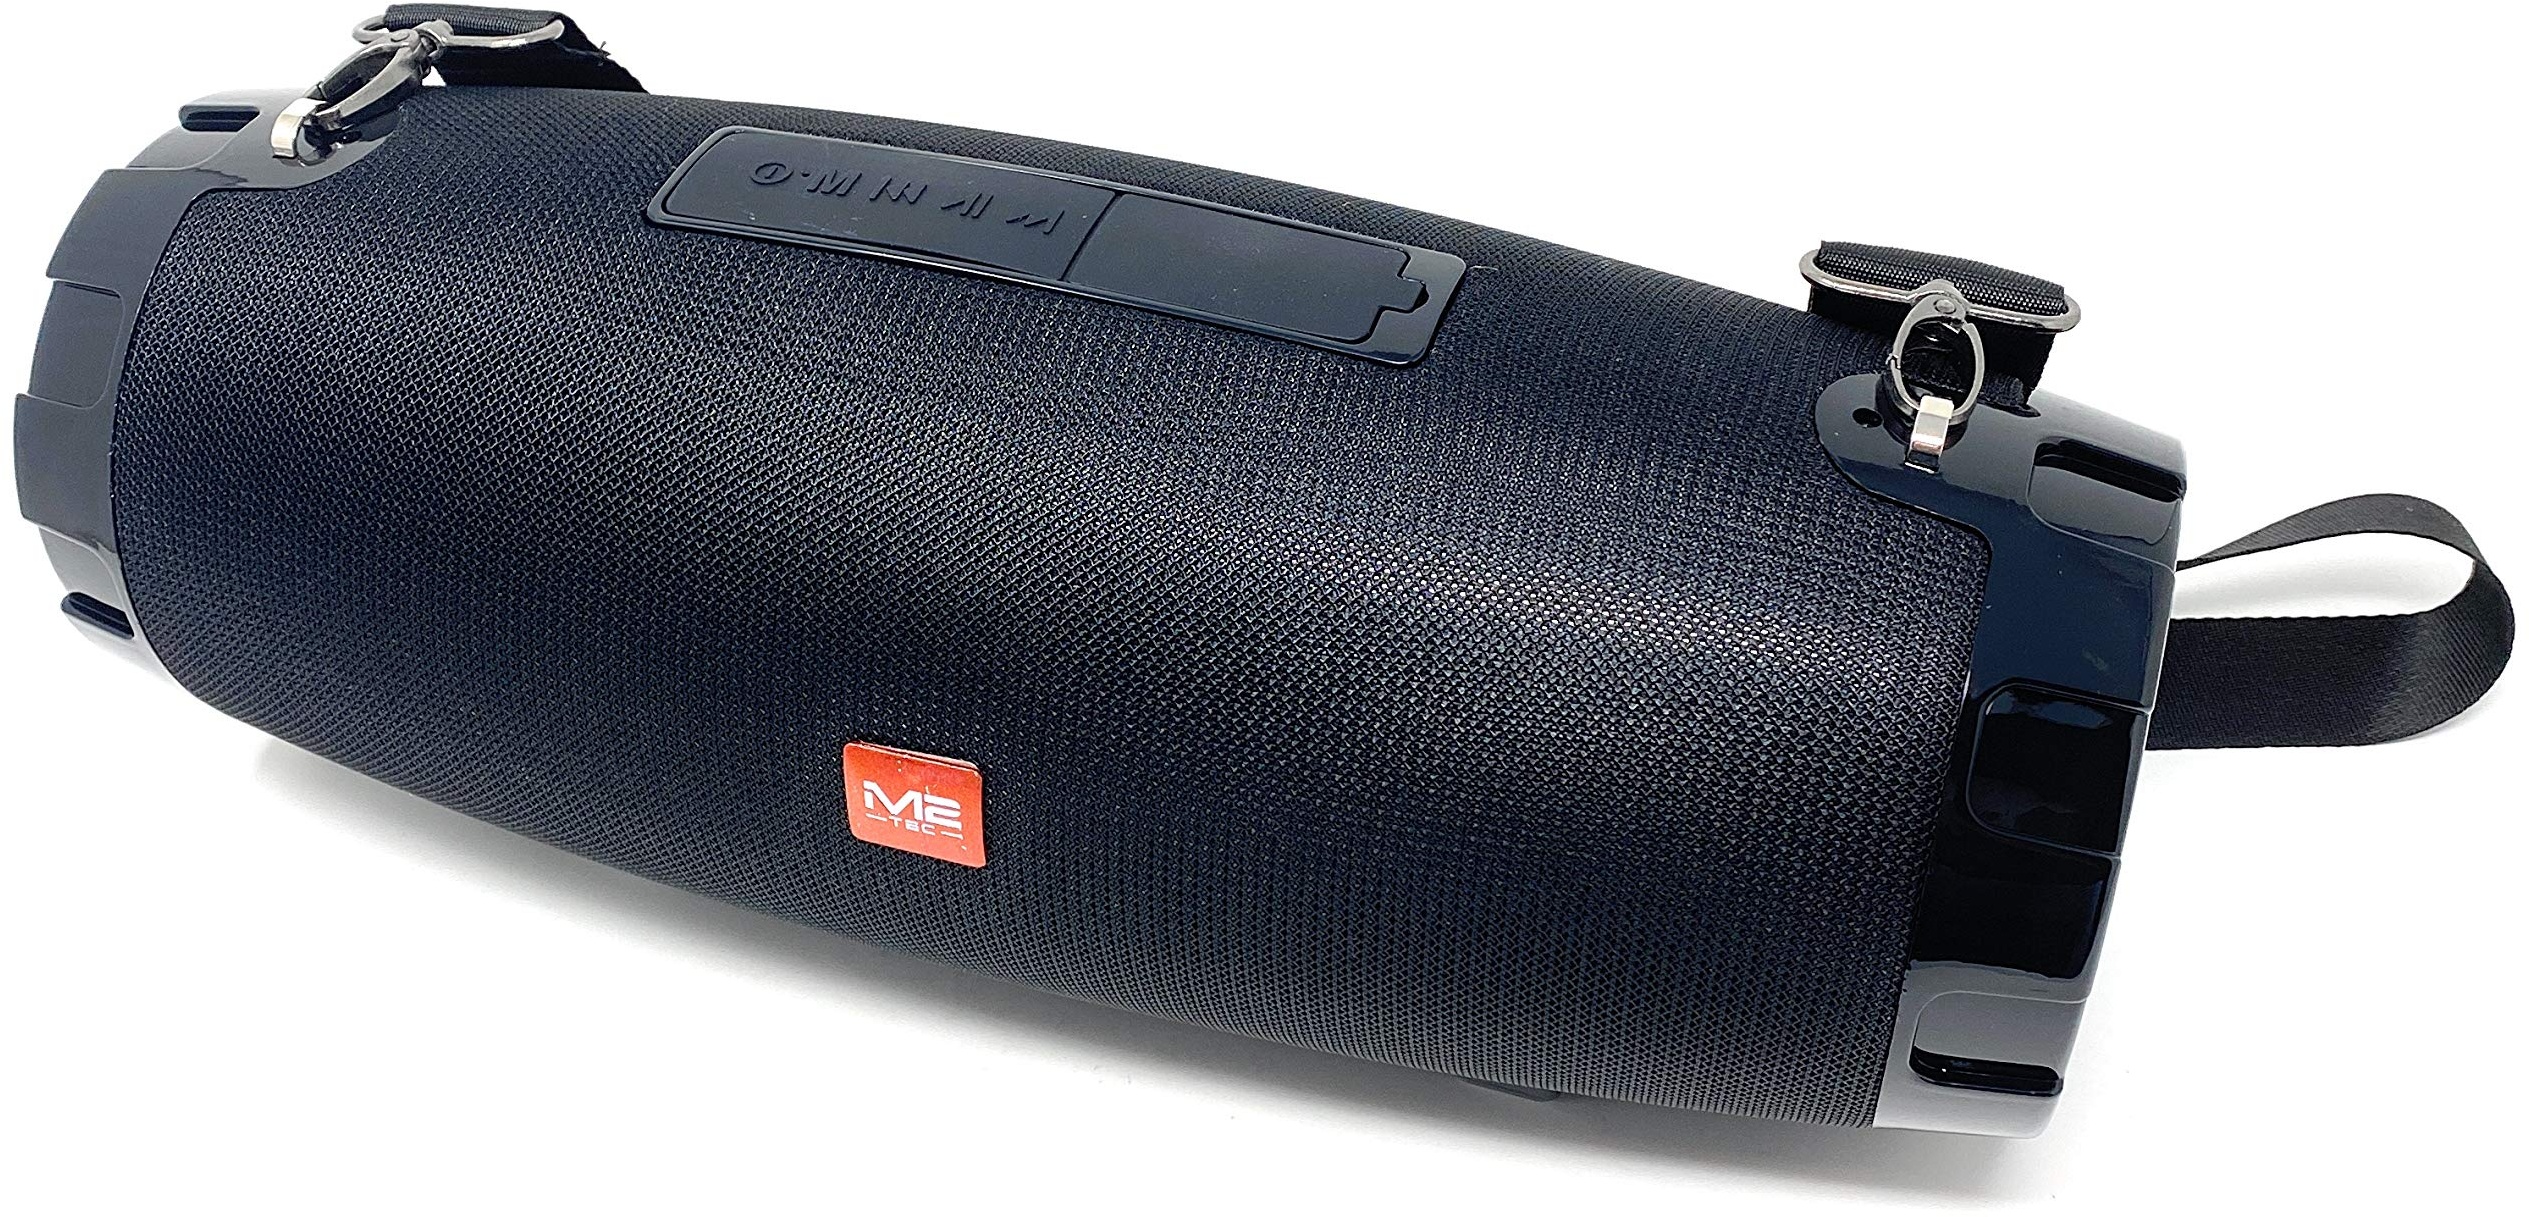 Spritzwasserfeste Soundbox Musikbox Radio Tragbarer Jumbo Bluetooth Lautsprecher, inkl. Freisprecheinrichtung (Schwarz)